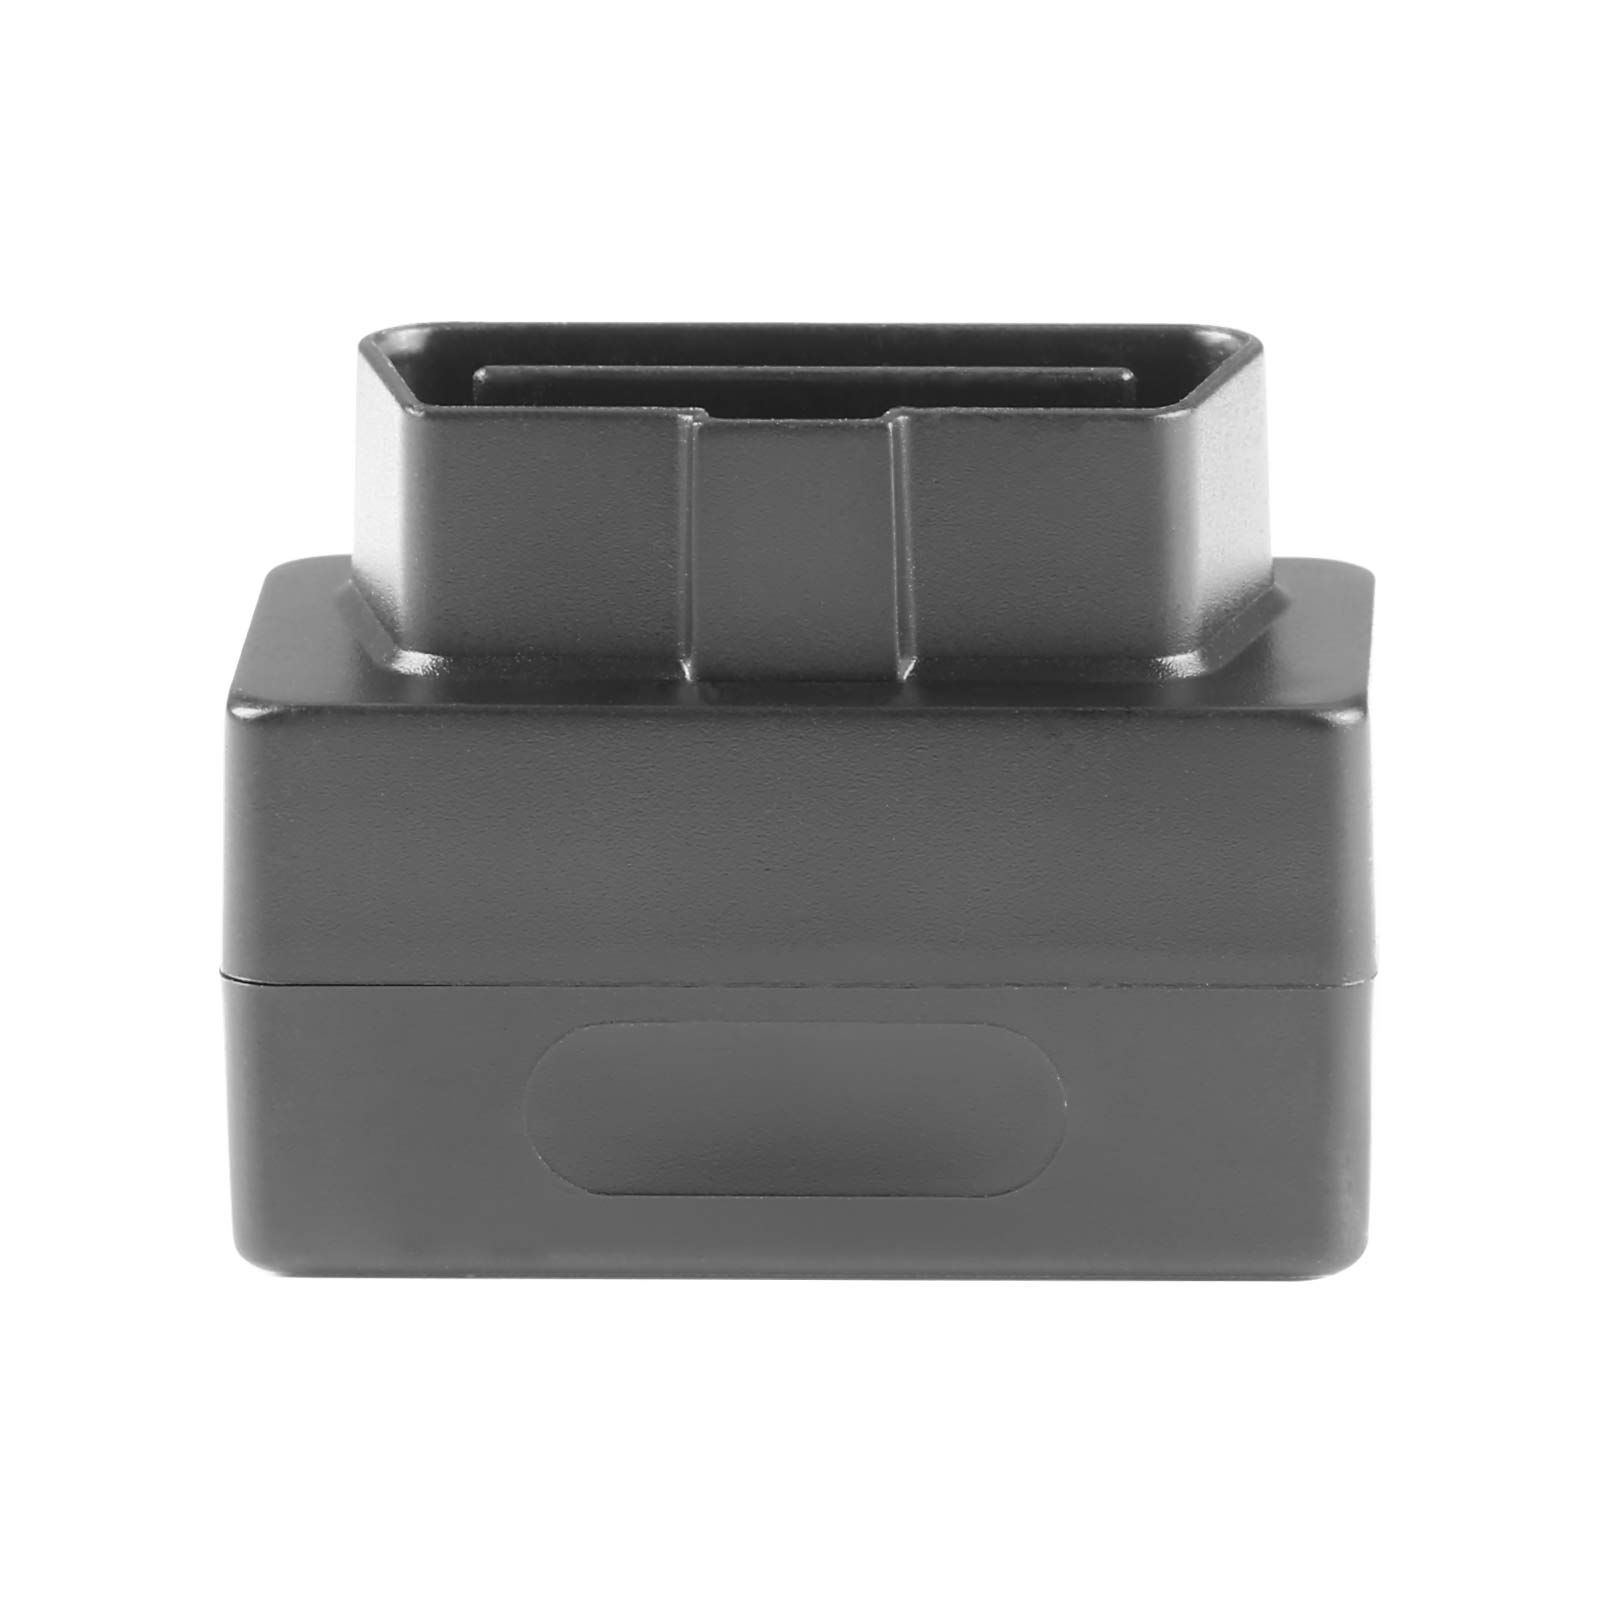 VXSCAN ENET WIFI/USB Adapter DOIP für VW/VOLVO, BMW F/G Serie Lizenz für BENZ Software W223 C206 213 167